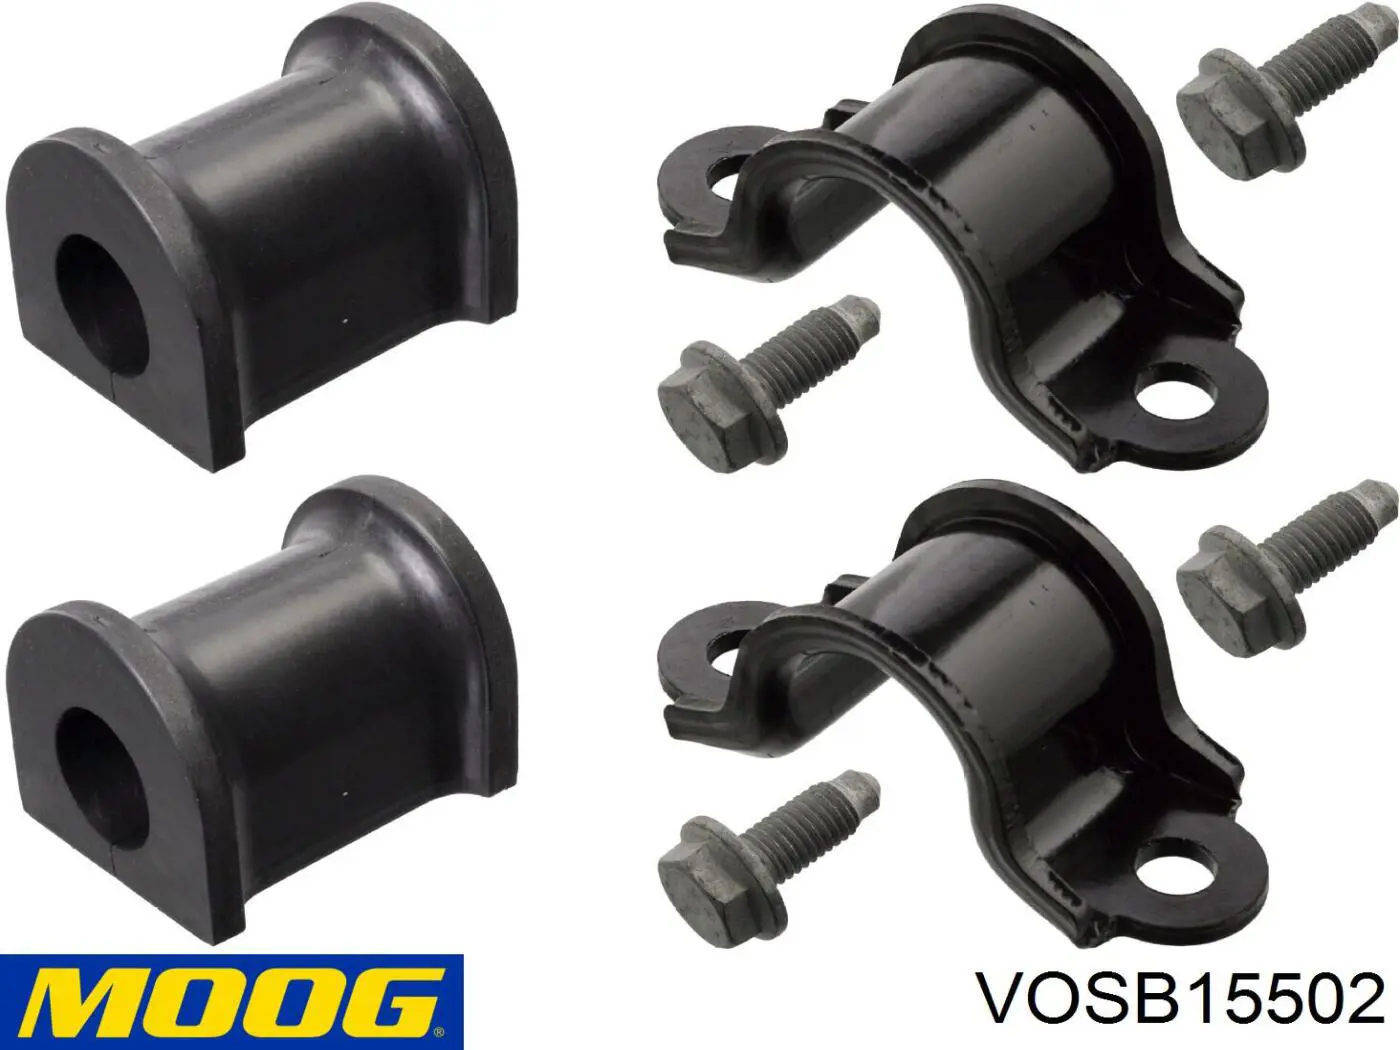 VO-SB-15502 Moog bucha de estabilizador traseiro